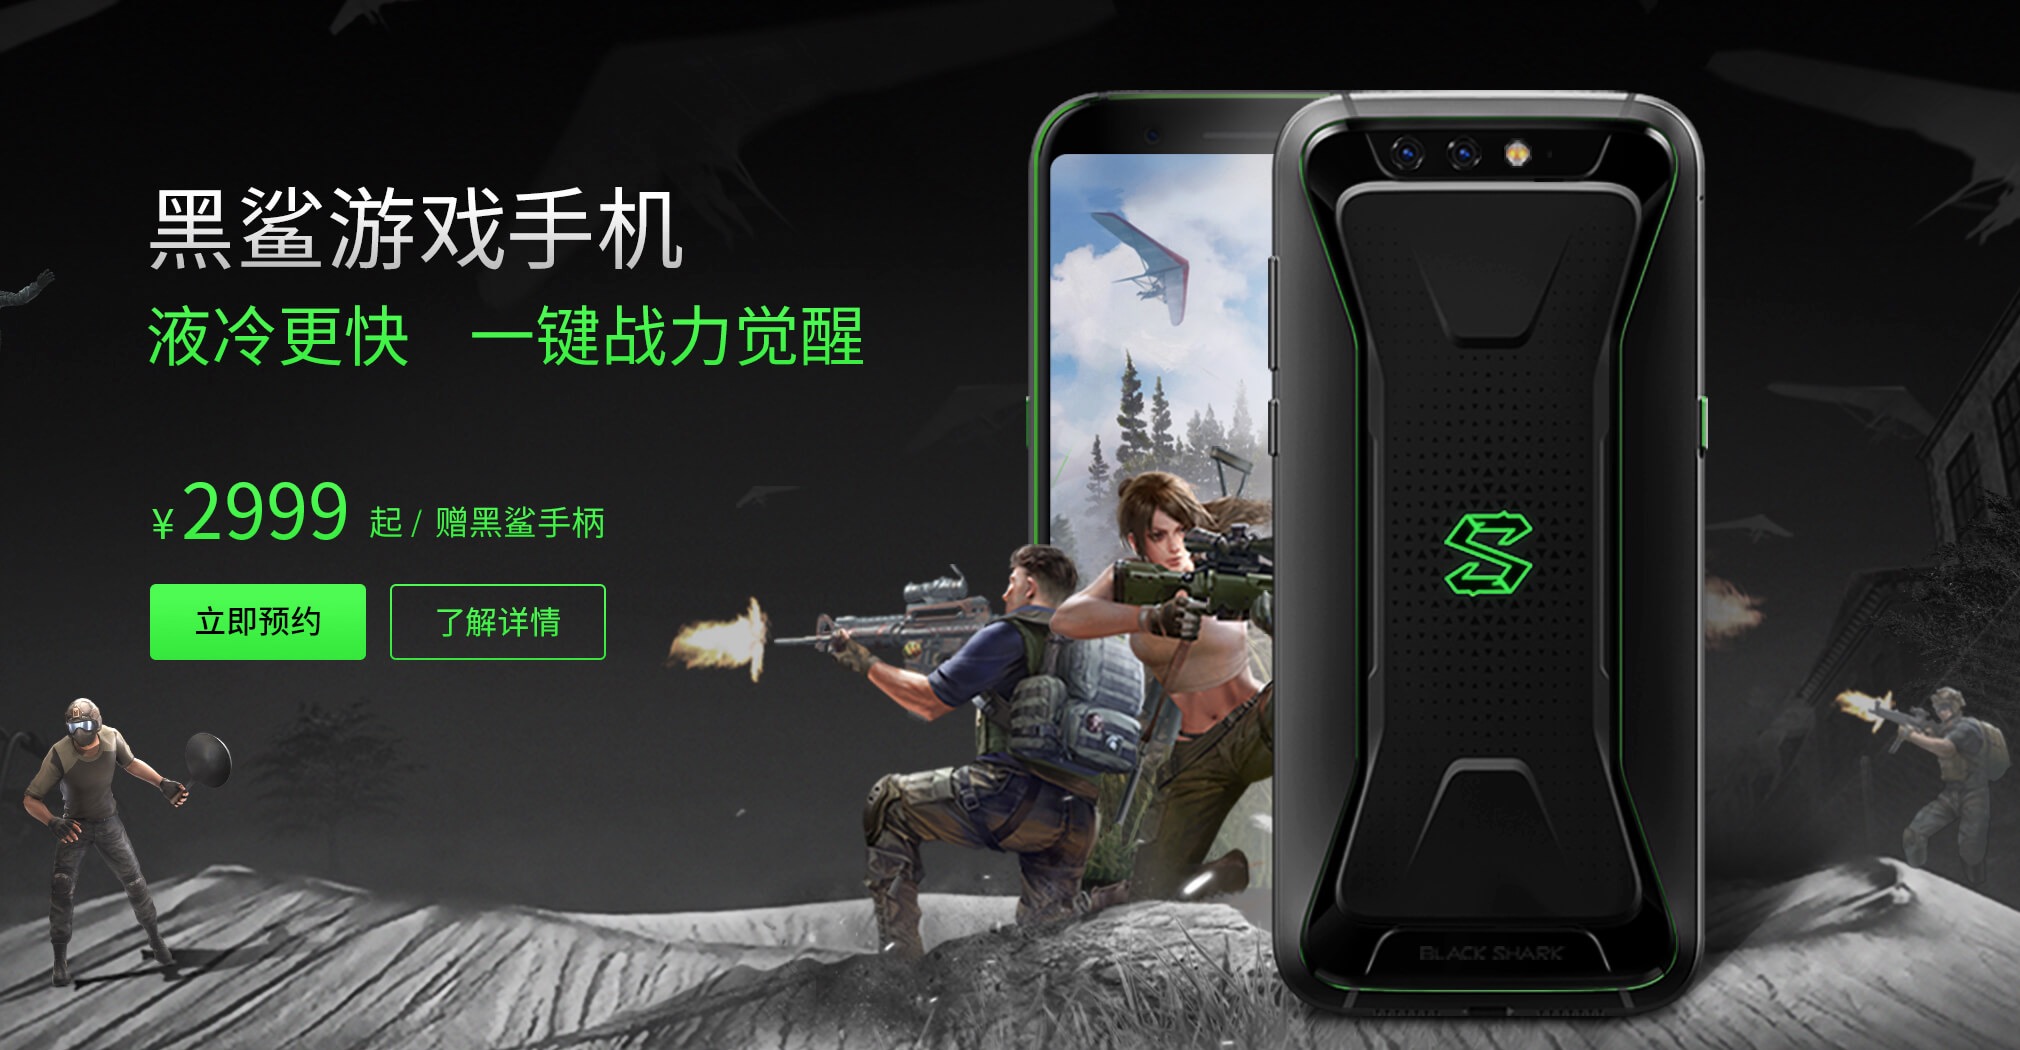 Xiaomi ra mắt gaming phone SHARK với chip
Snapdragon 845, RAM 6/8GB, tản nhiệt nước, giá từ 10.8
triệu